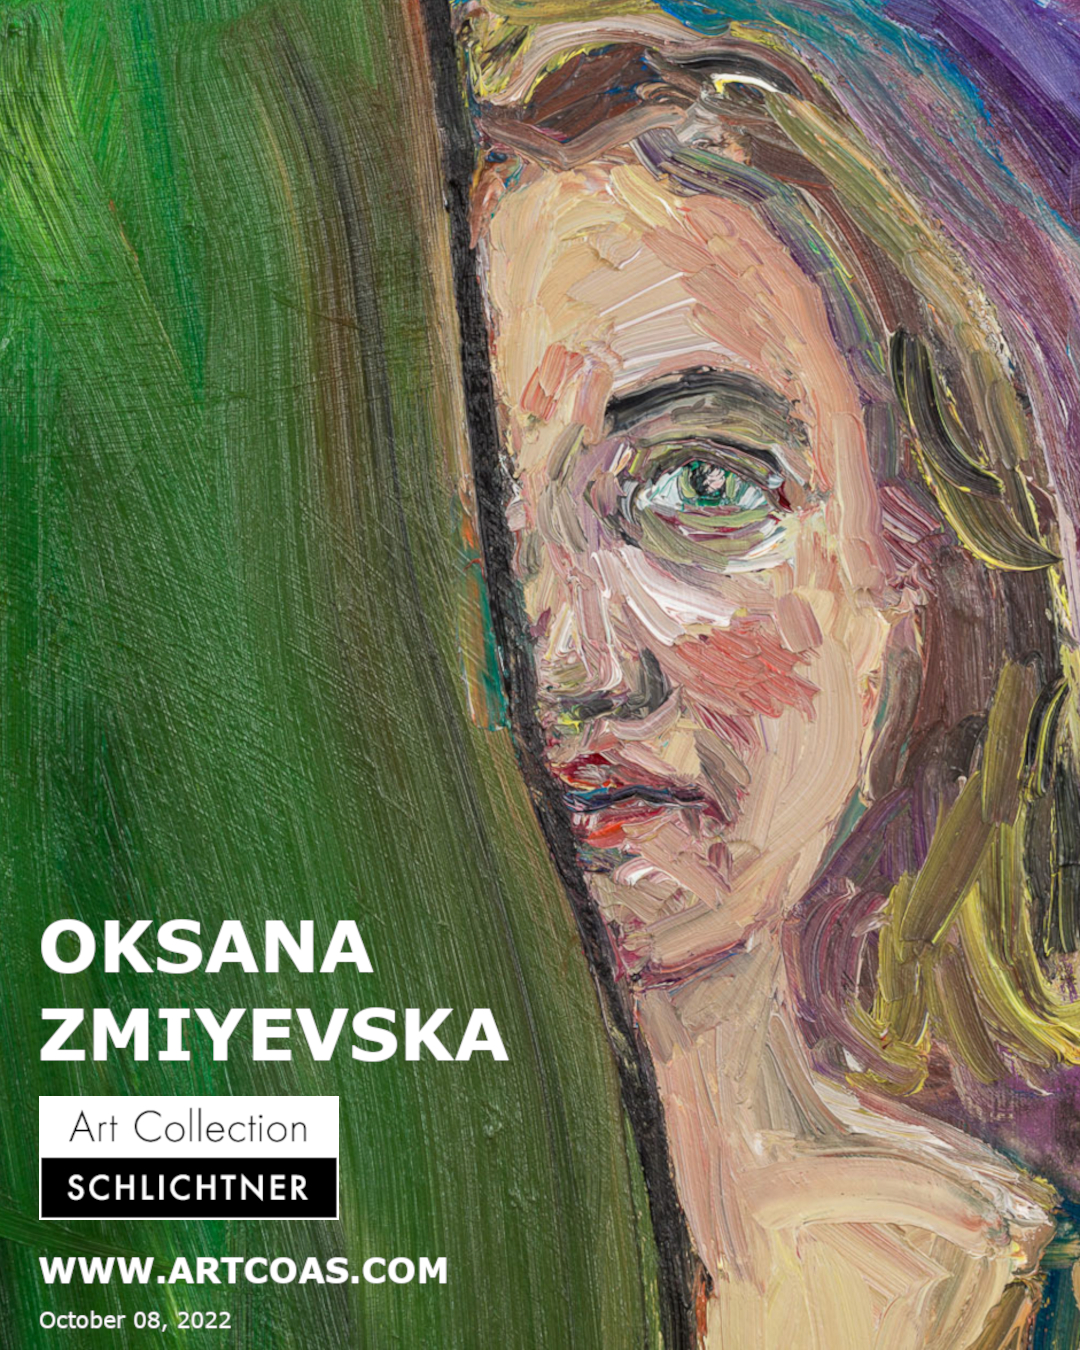 Oksana Zmiyevska  - online solo exhibition -  October 08, 2022